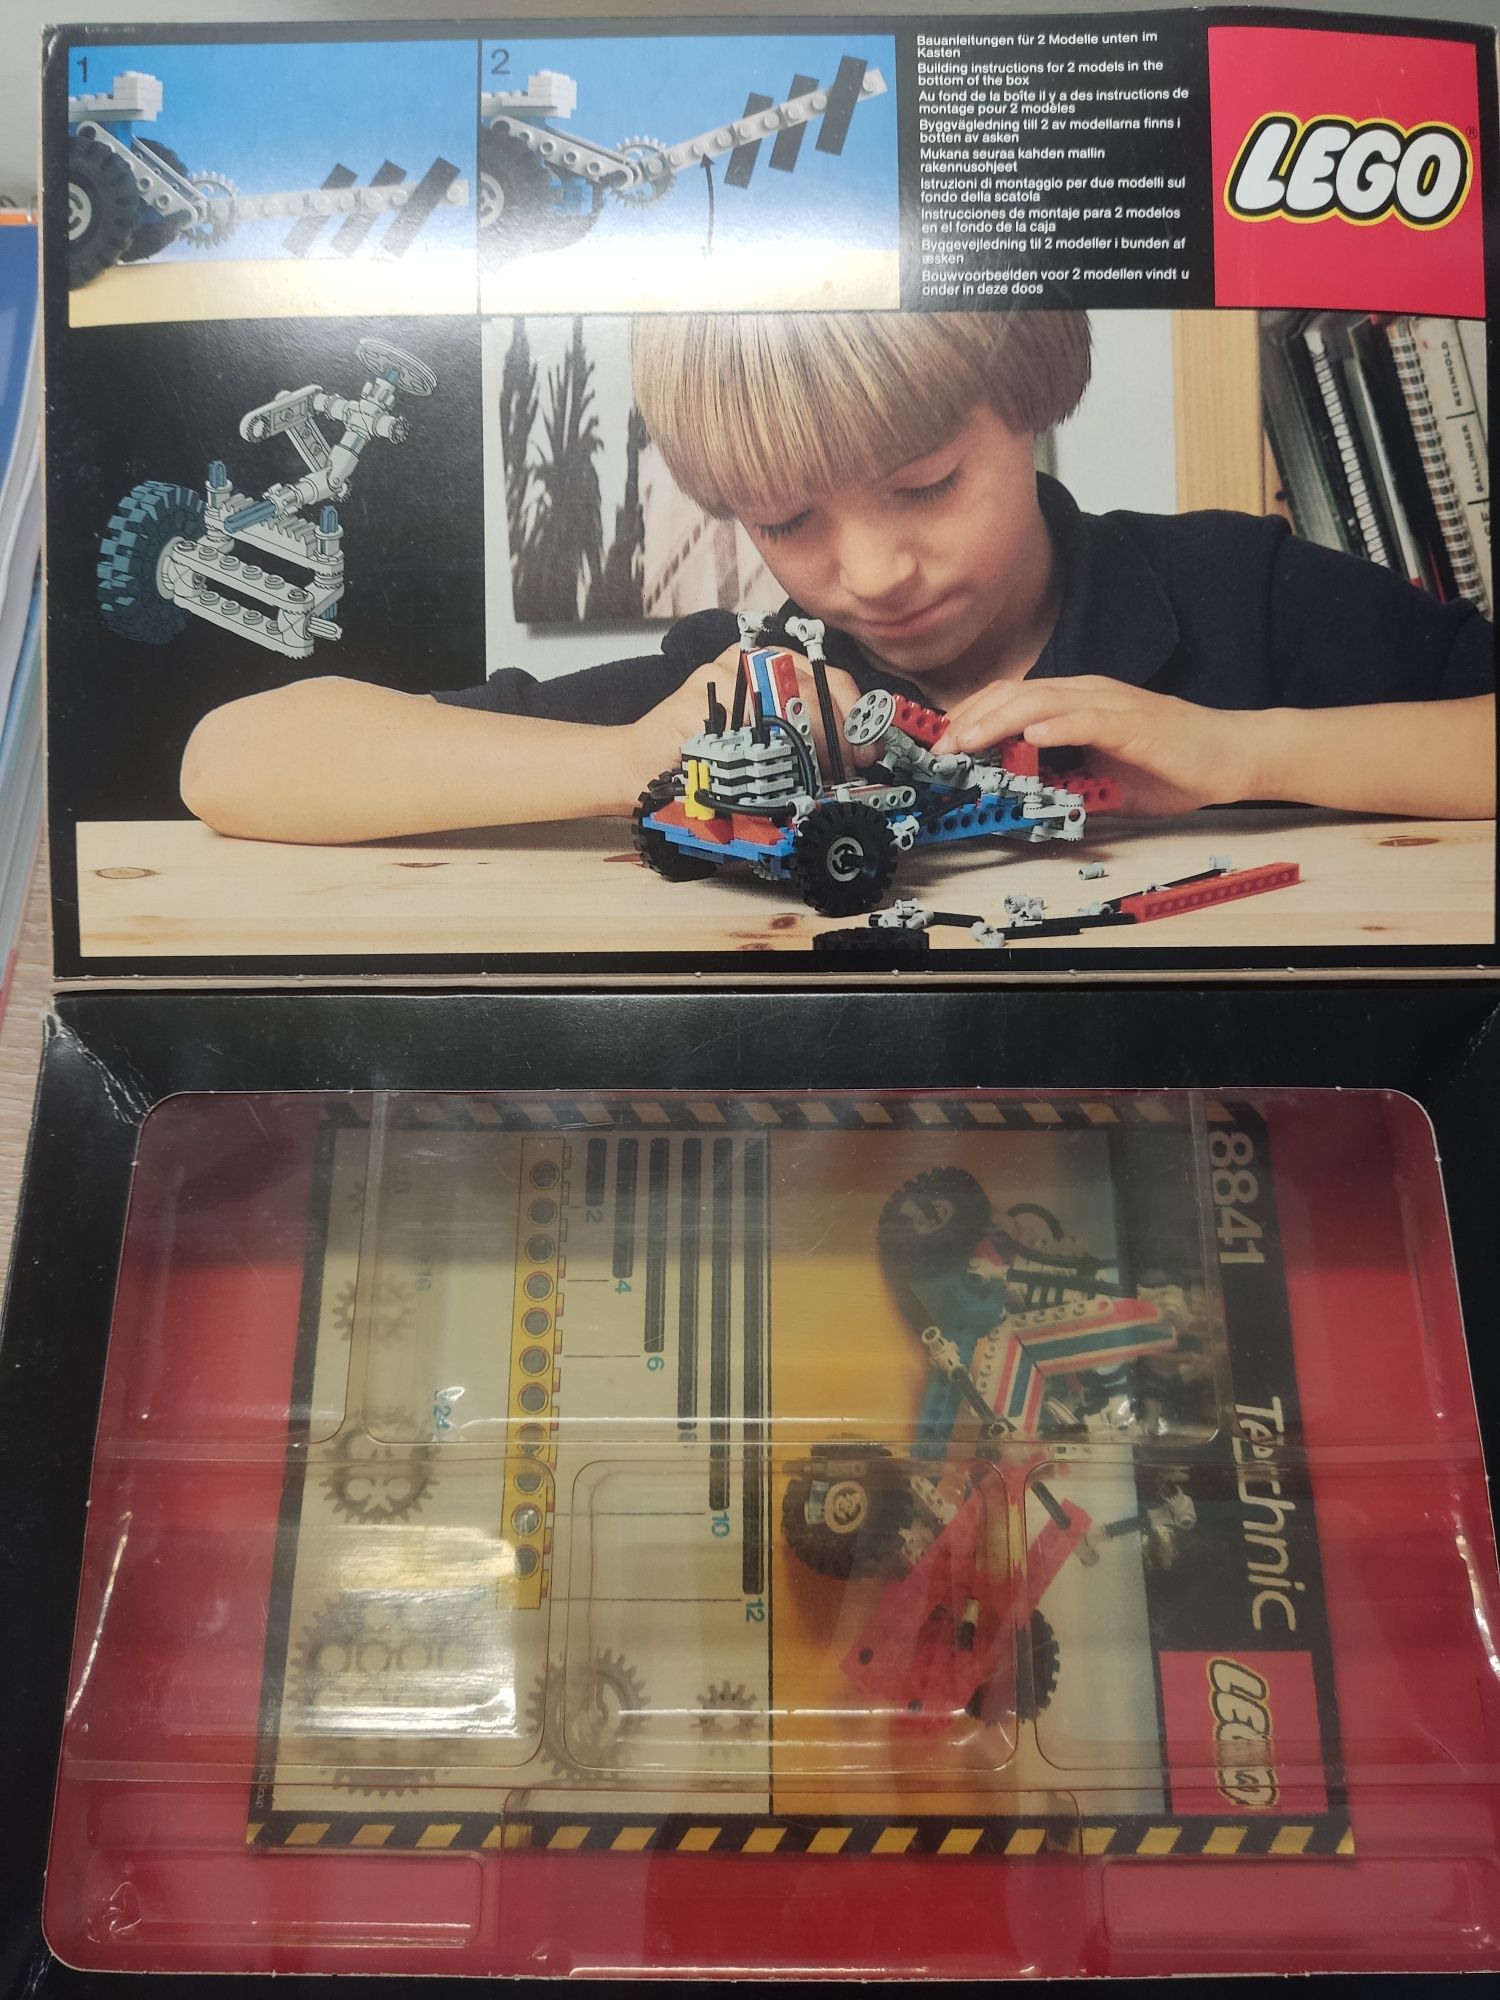 Lego sets 8841 + 8700